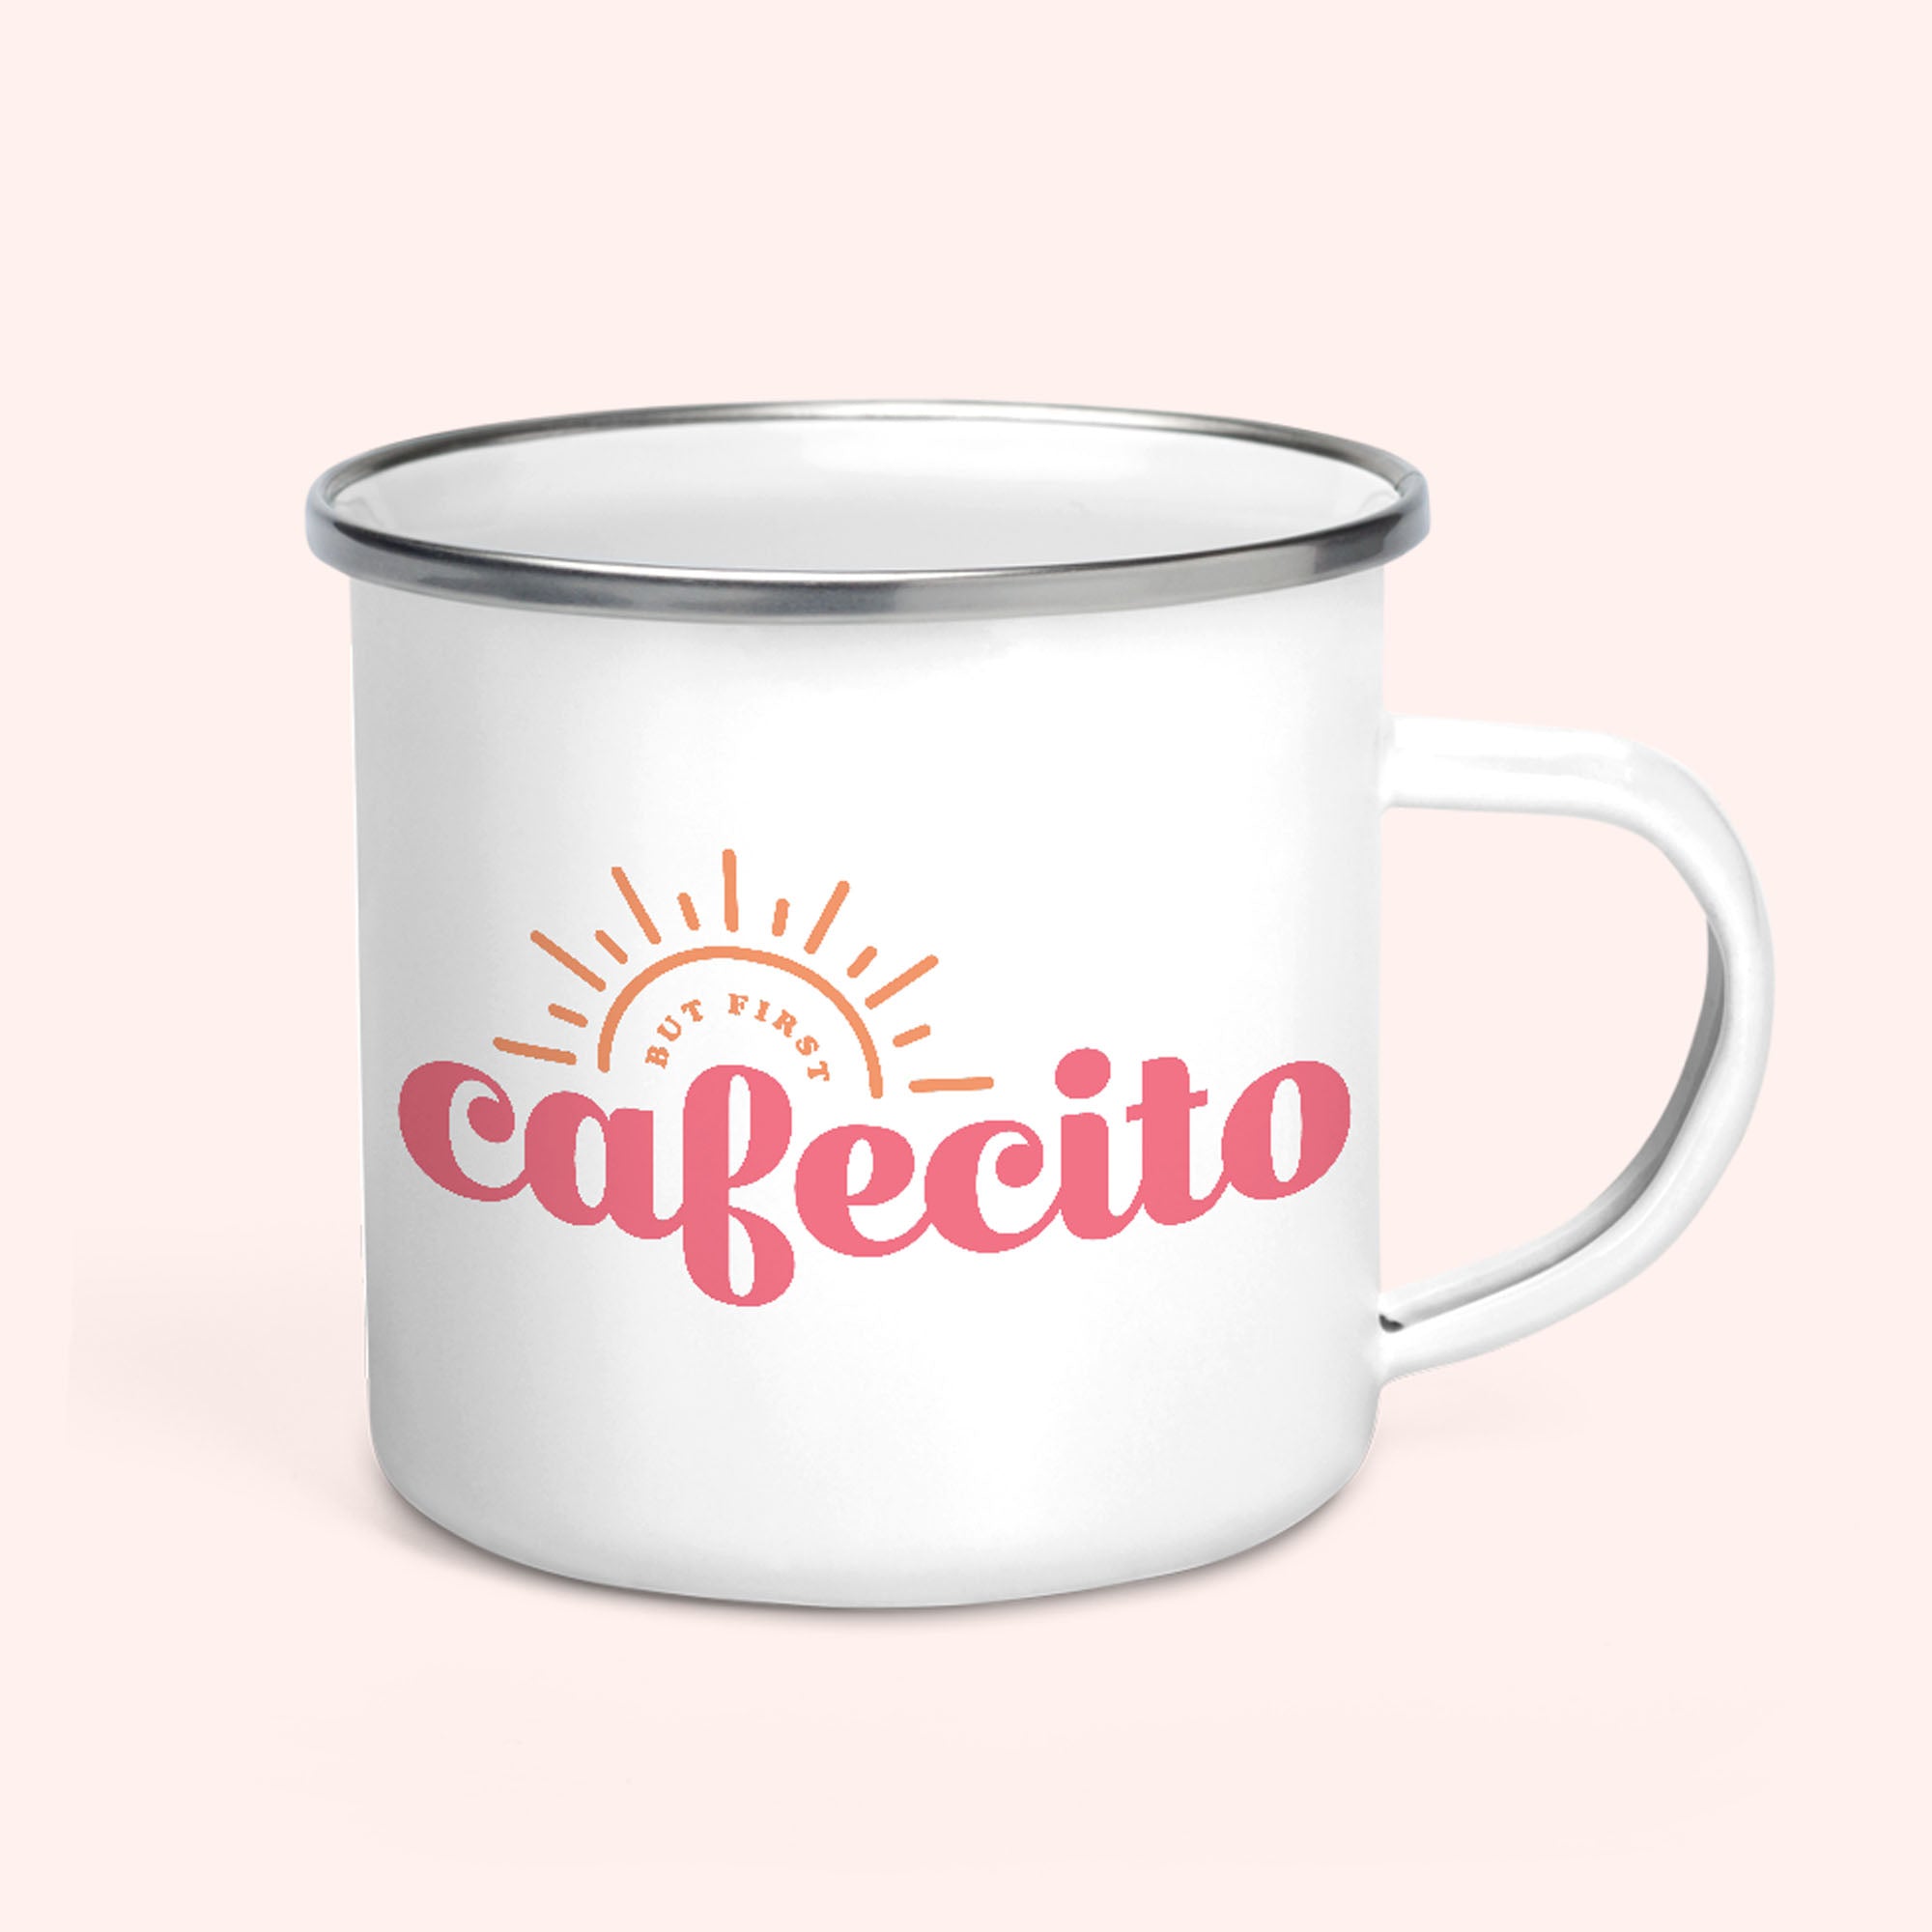 Pero Primero Cafecito Coffee Mug – Gigi Crafting Creations